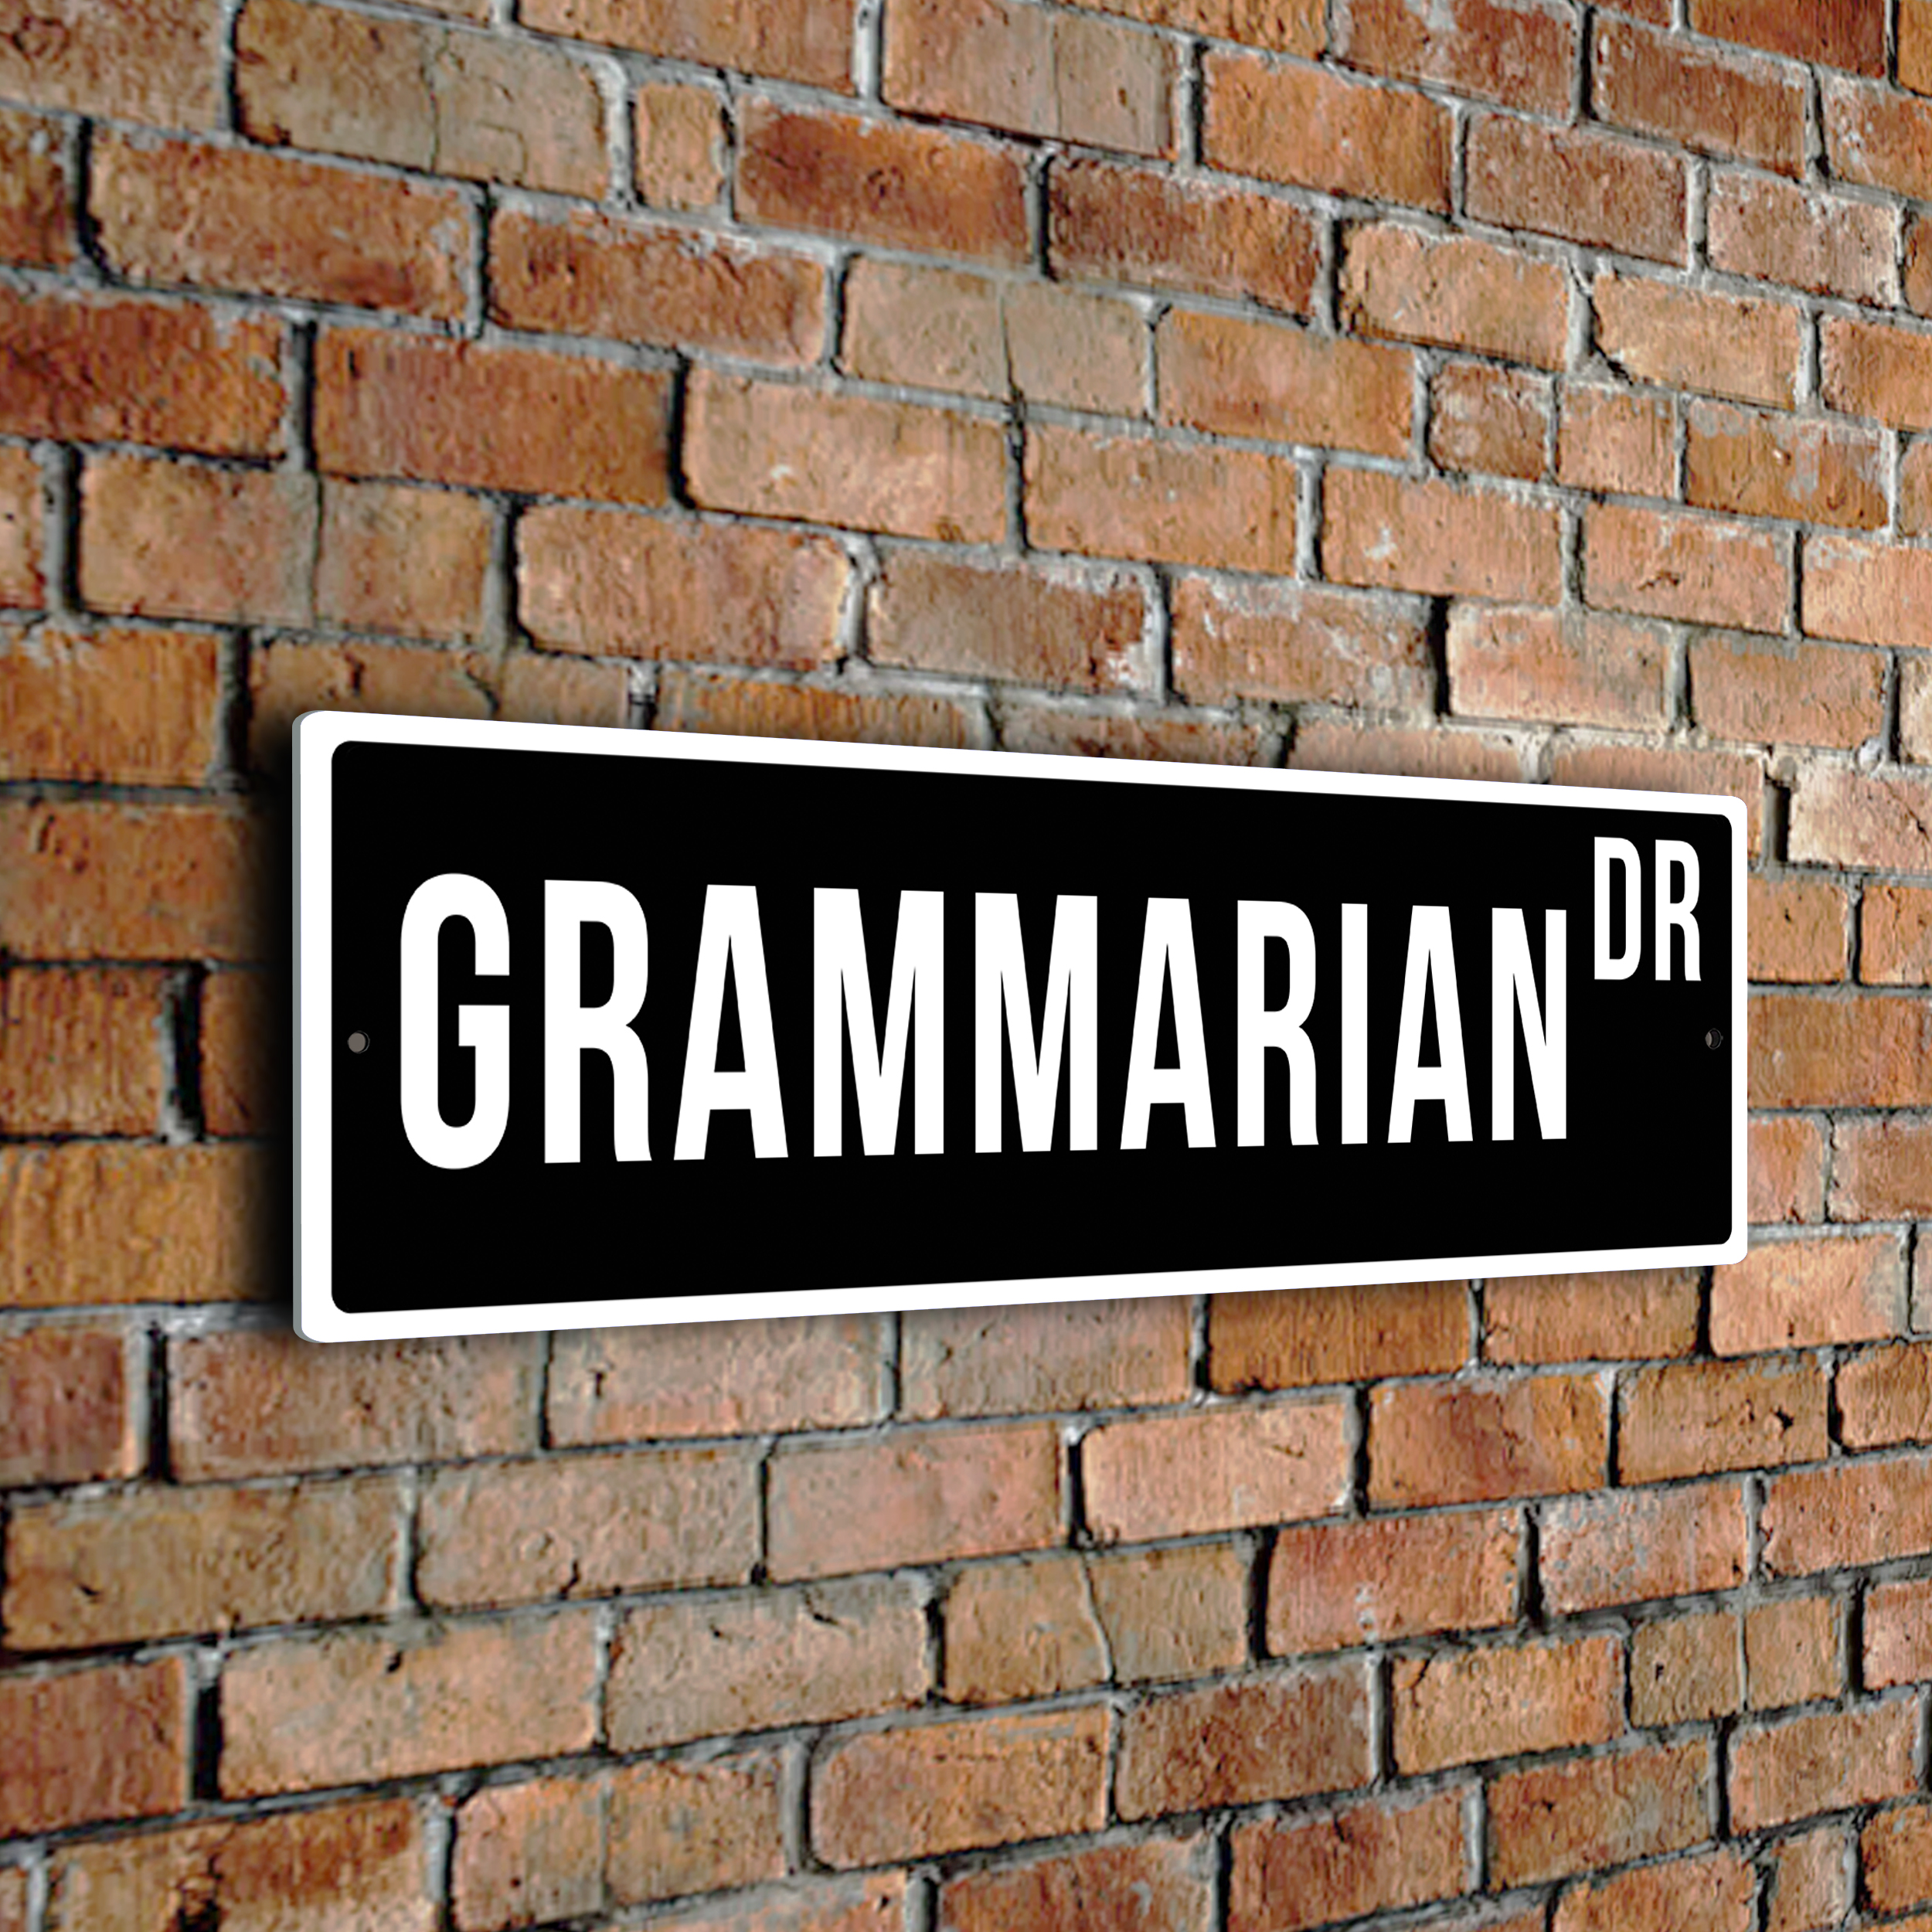 Grammarian street sign